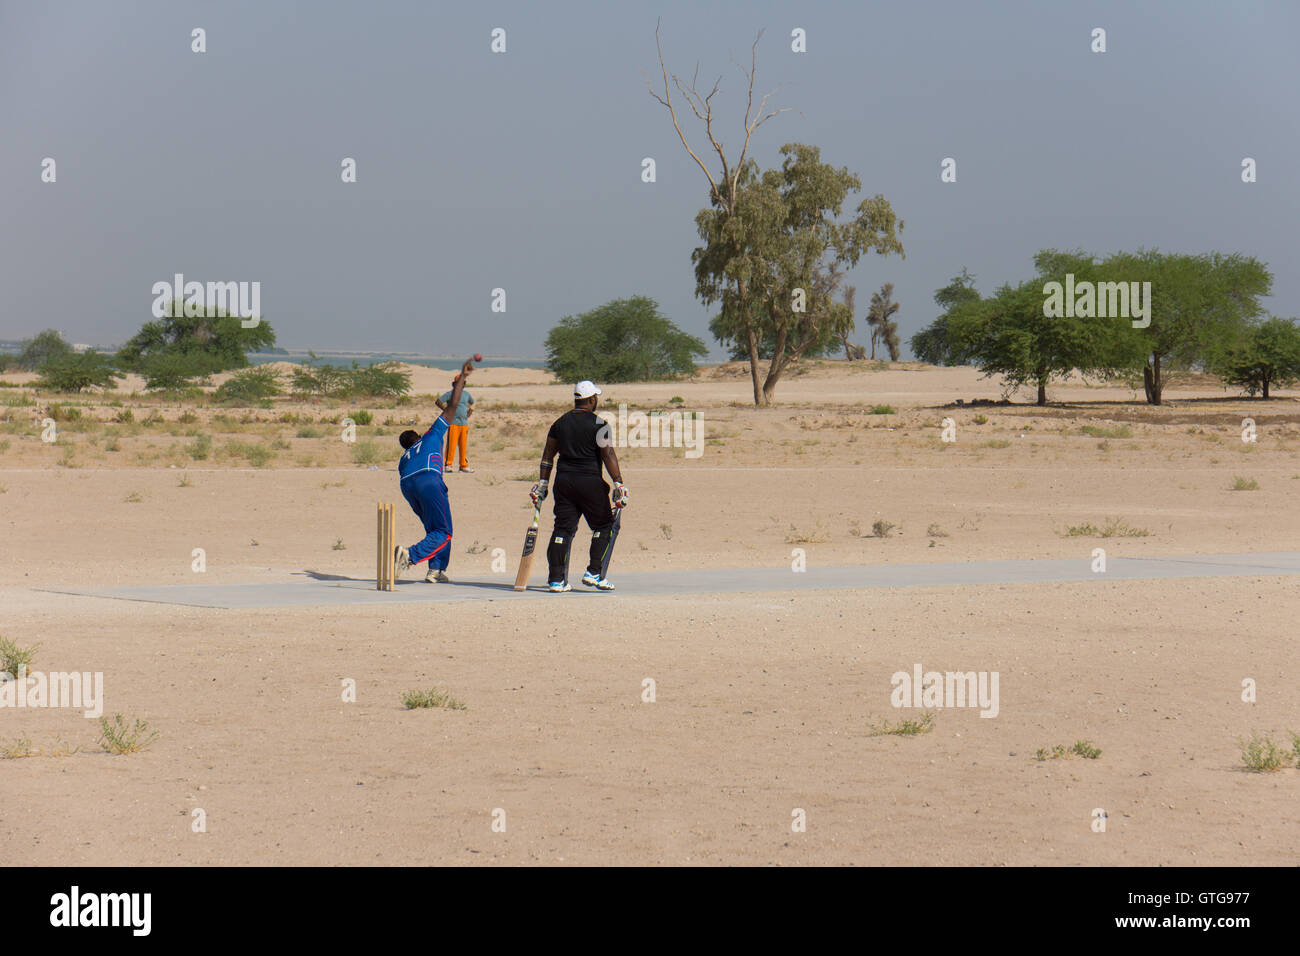 Les travailleurs migrants d'entraînement de l'équipe de cricket au Koweït Banque D'Images